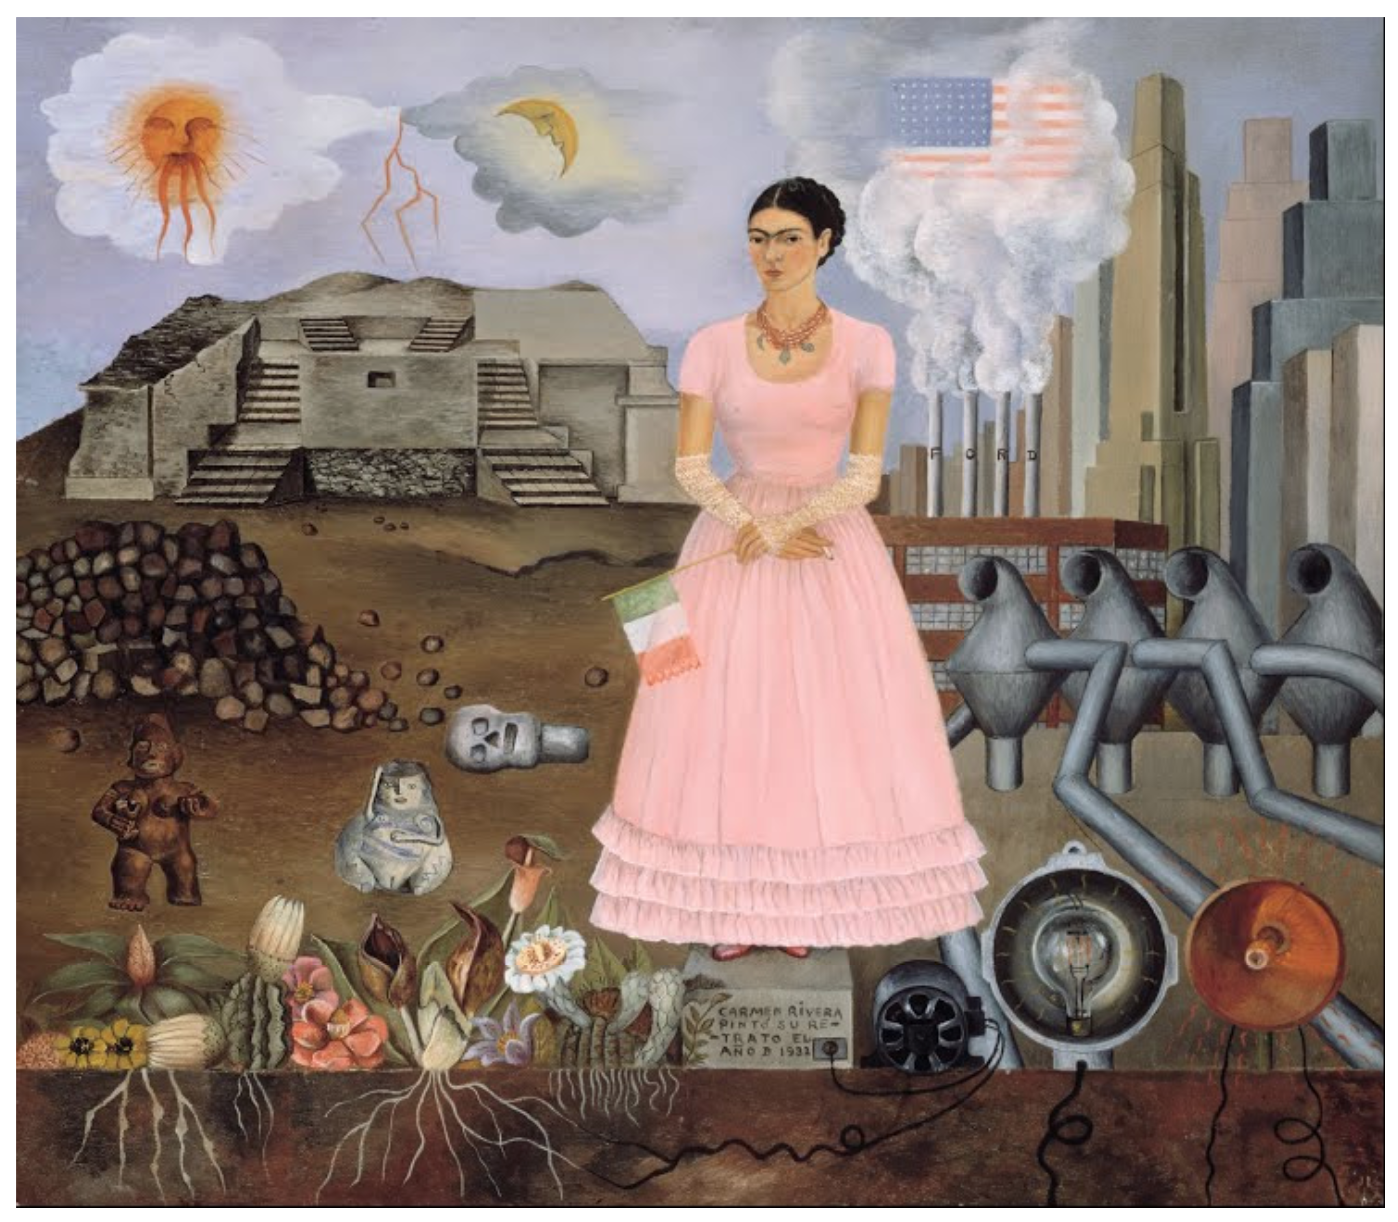 Capture d'écran de "Self-portrait on the Borderline between Mexico and the United States" extraite de la collection virtuelle "Les visages de Frida" de Google Arts&Culture. [2018 Banco de México Diego Rivera & Frida Kahlo Museums Trust.]